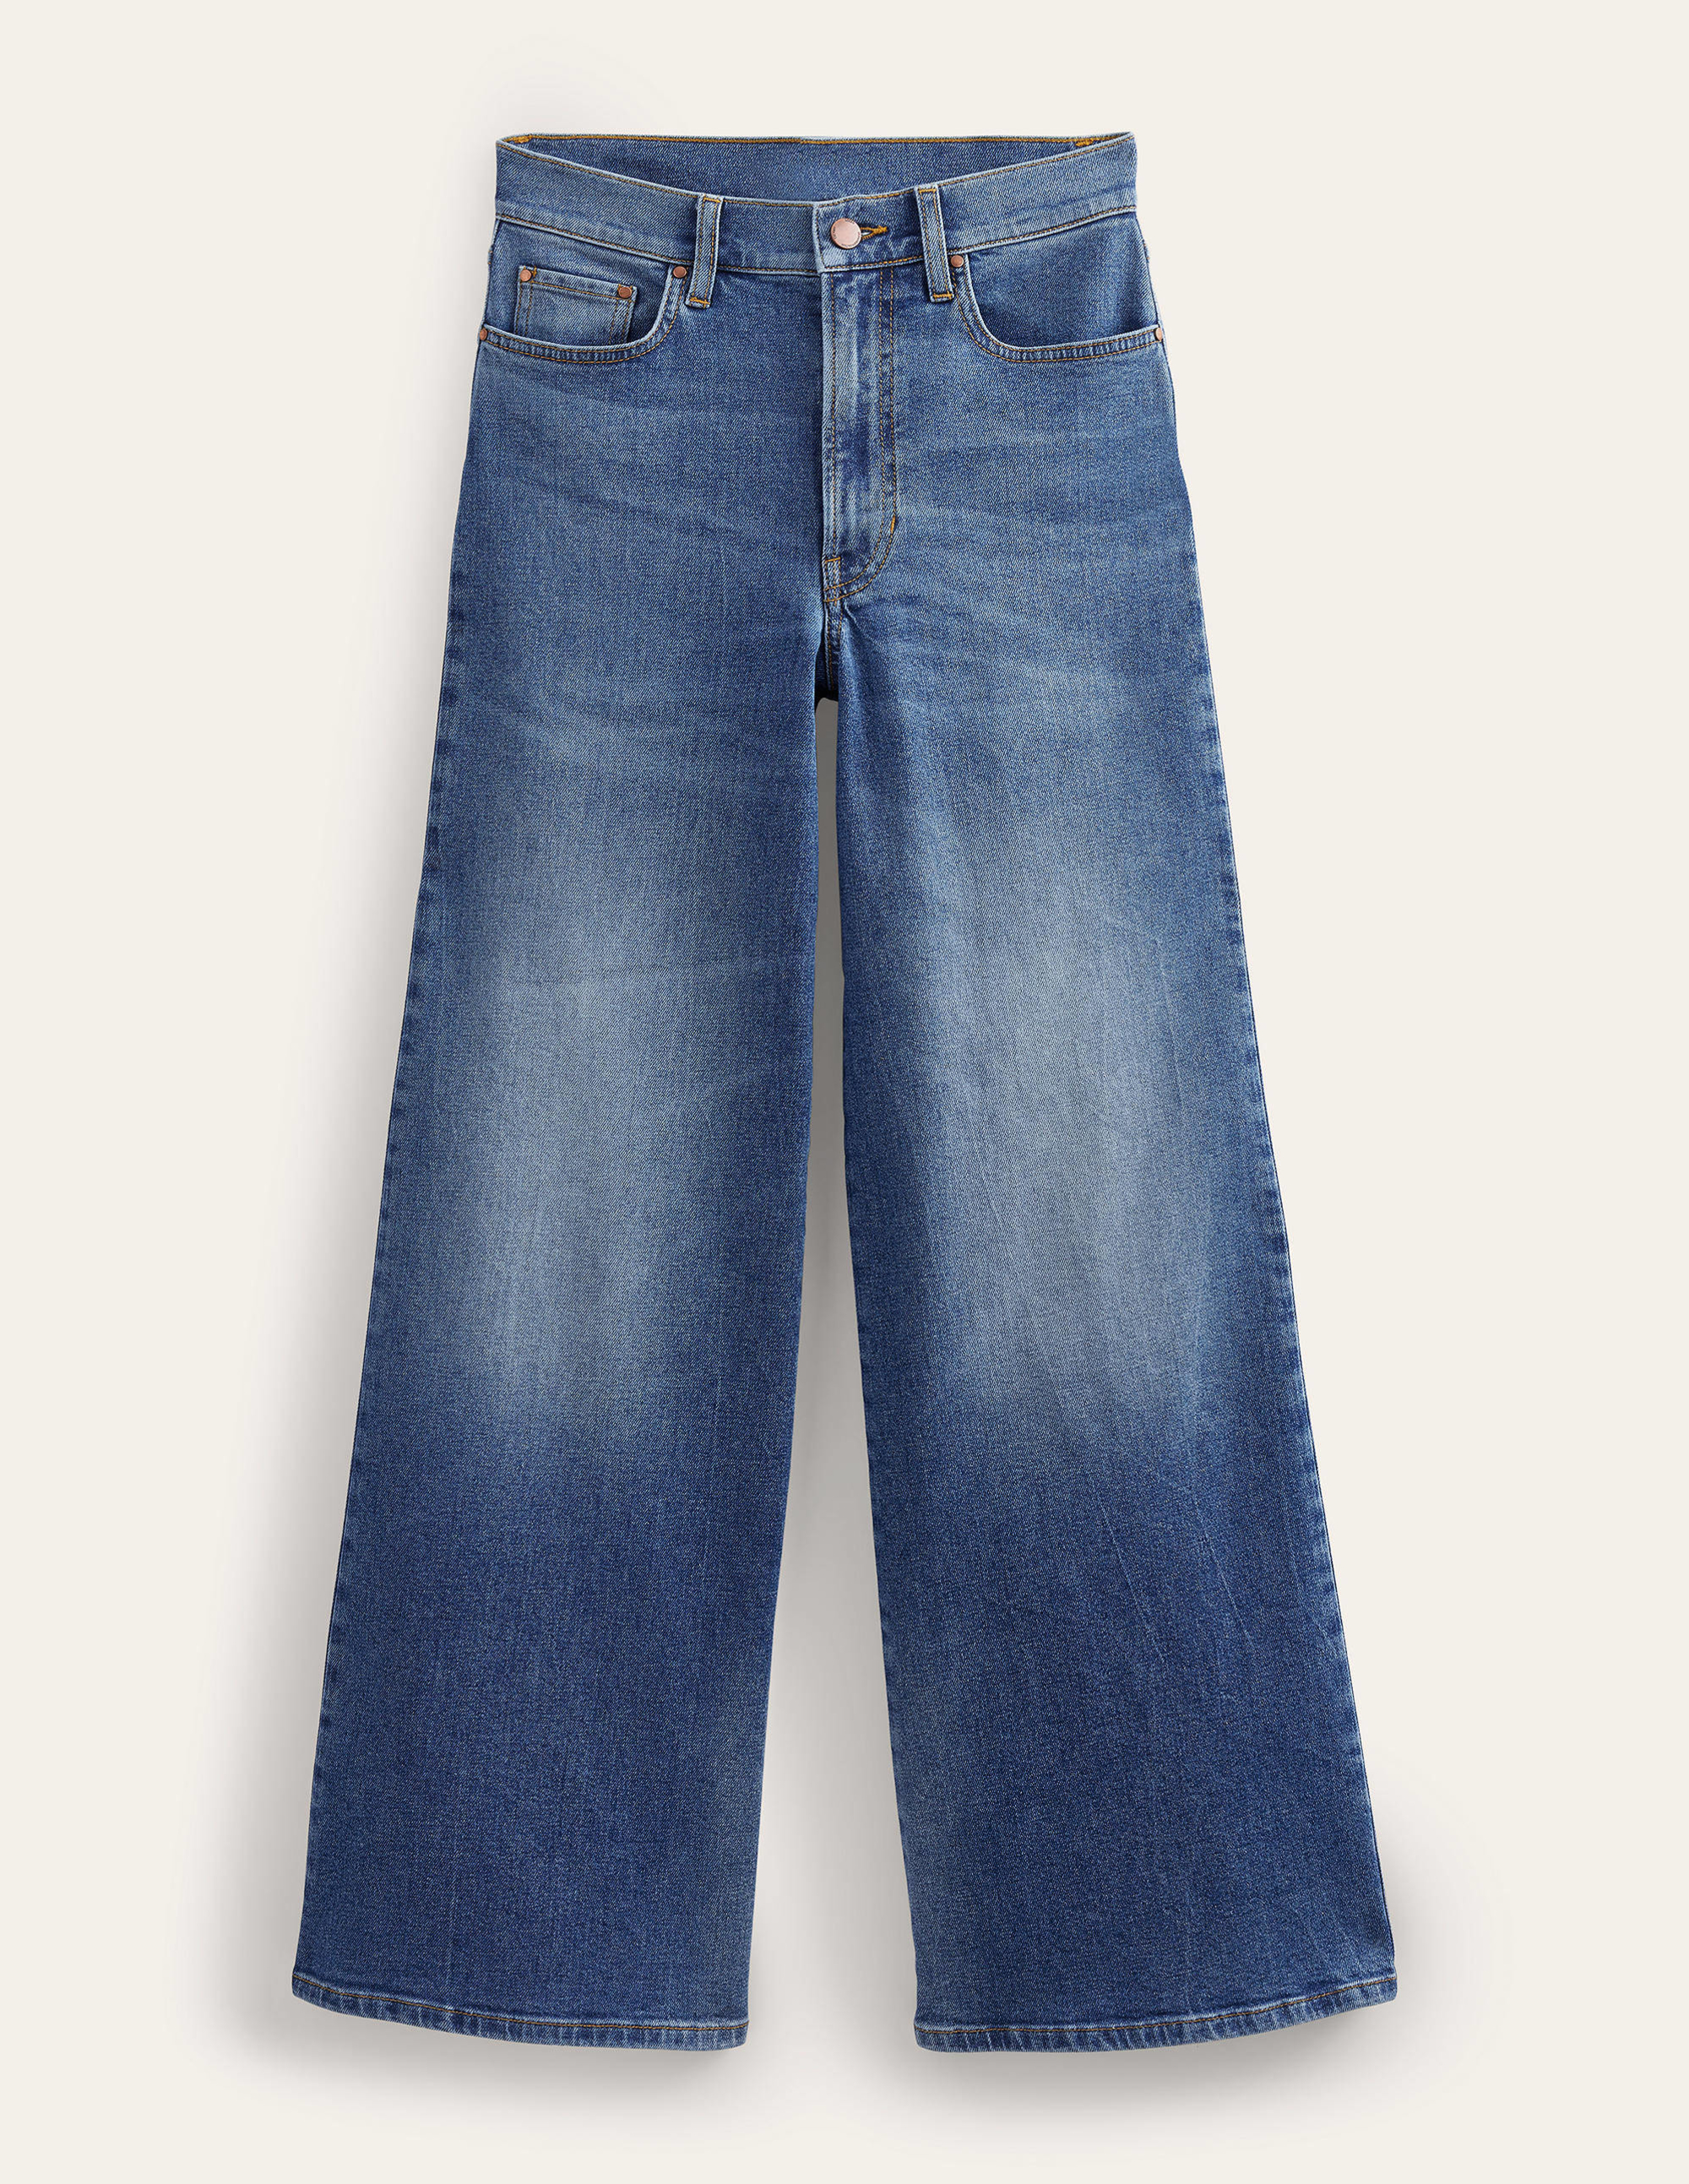 شلوار جینز 20416 سایز 34 تا 44 کد2 مارک Camaieu